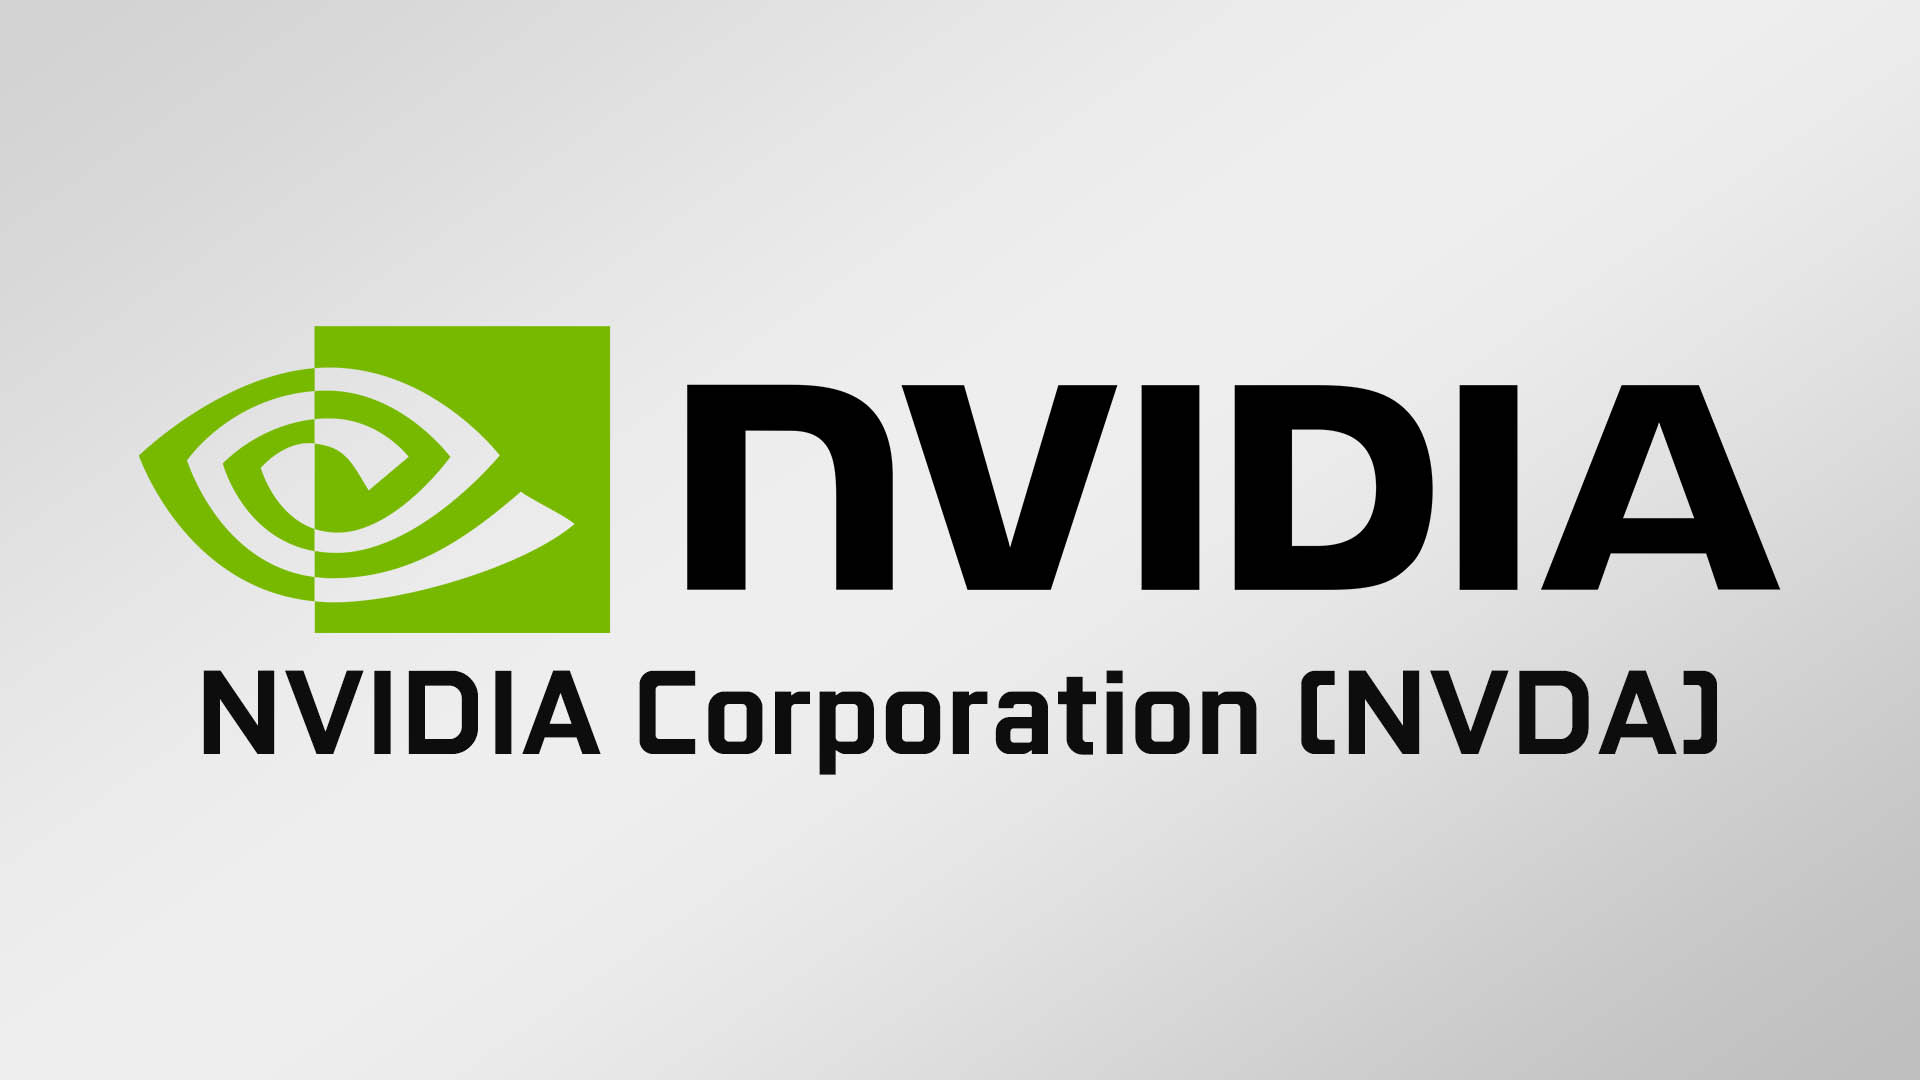 NVIDIAのQ4決算発表。GPU不足は4月まで続くと予測、通期では改善